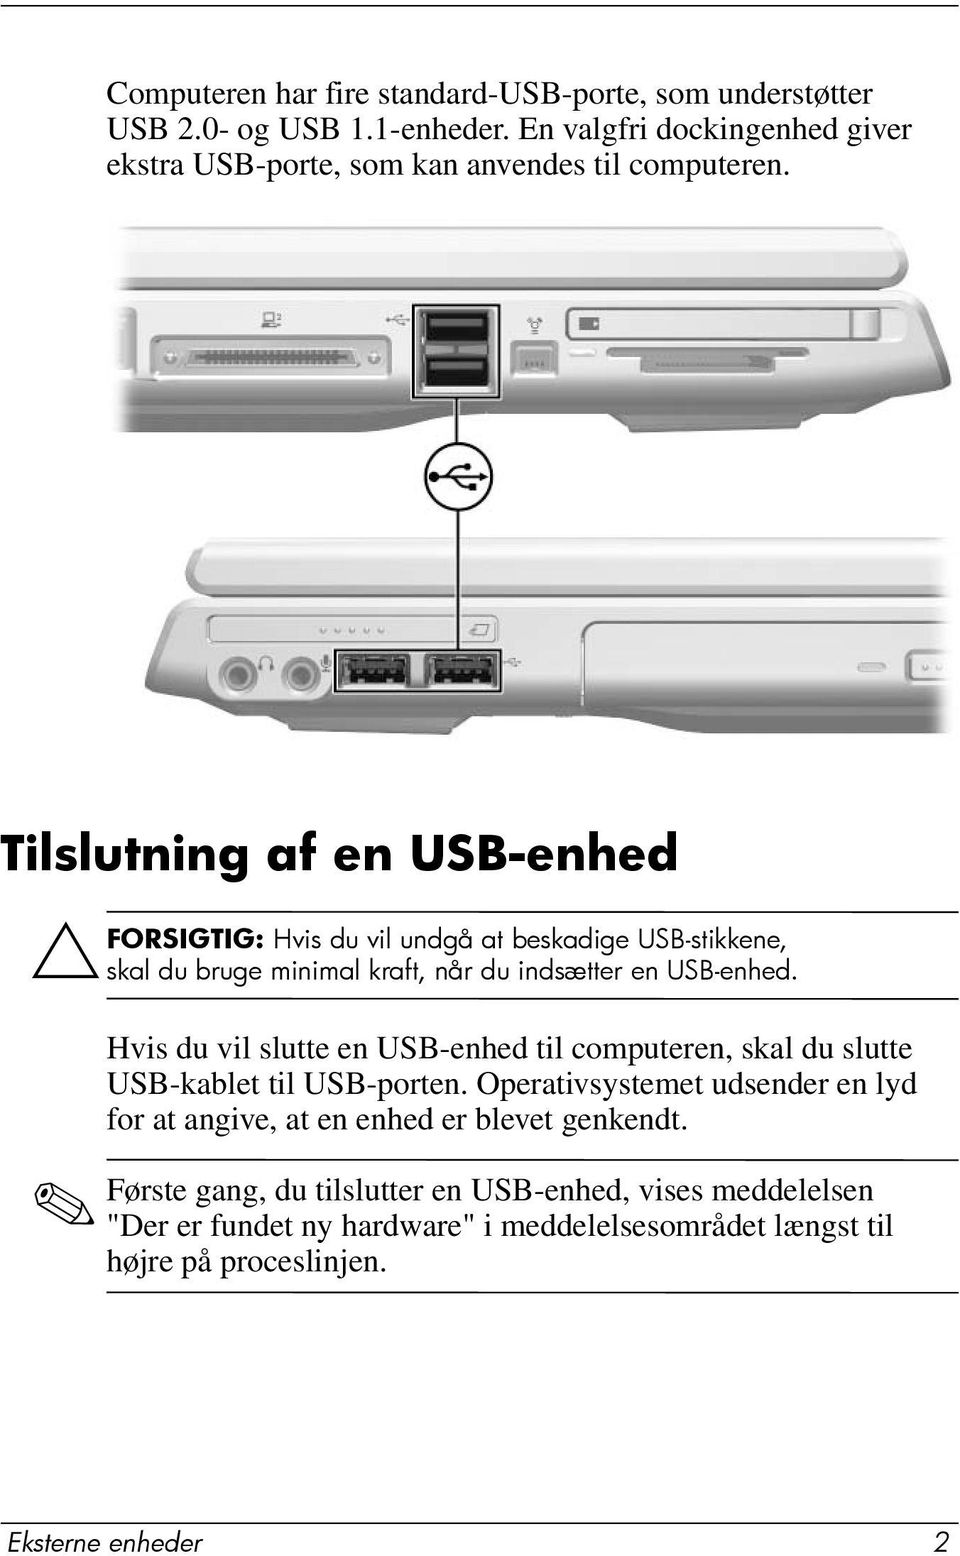 Tilslutning af en USB-enhed ÄFORSIGTIG: Hvis du vil undgå at beskadige USB-stikkene, skal du bruge minimal kraft, når du indsætter en USB-enhed.